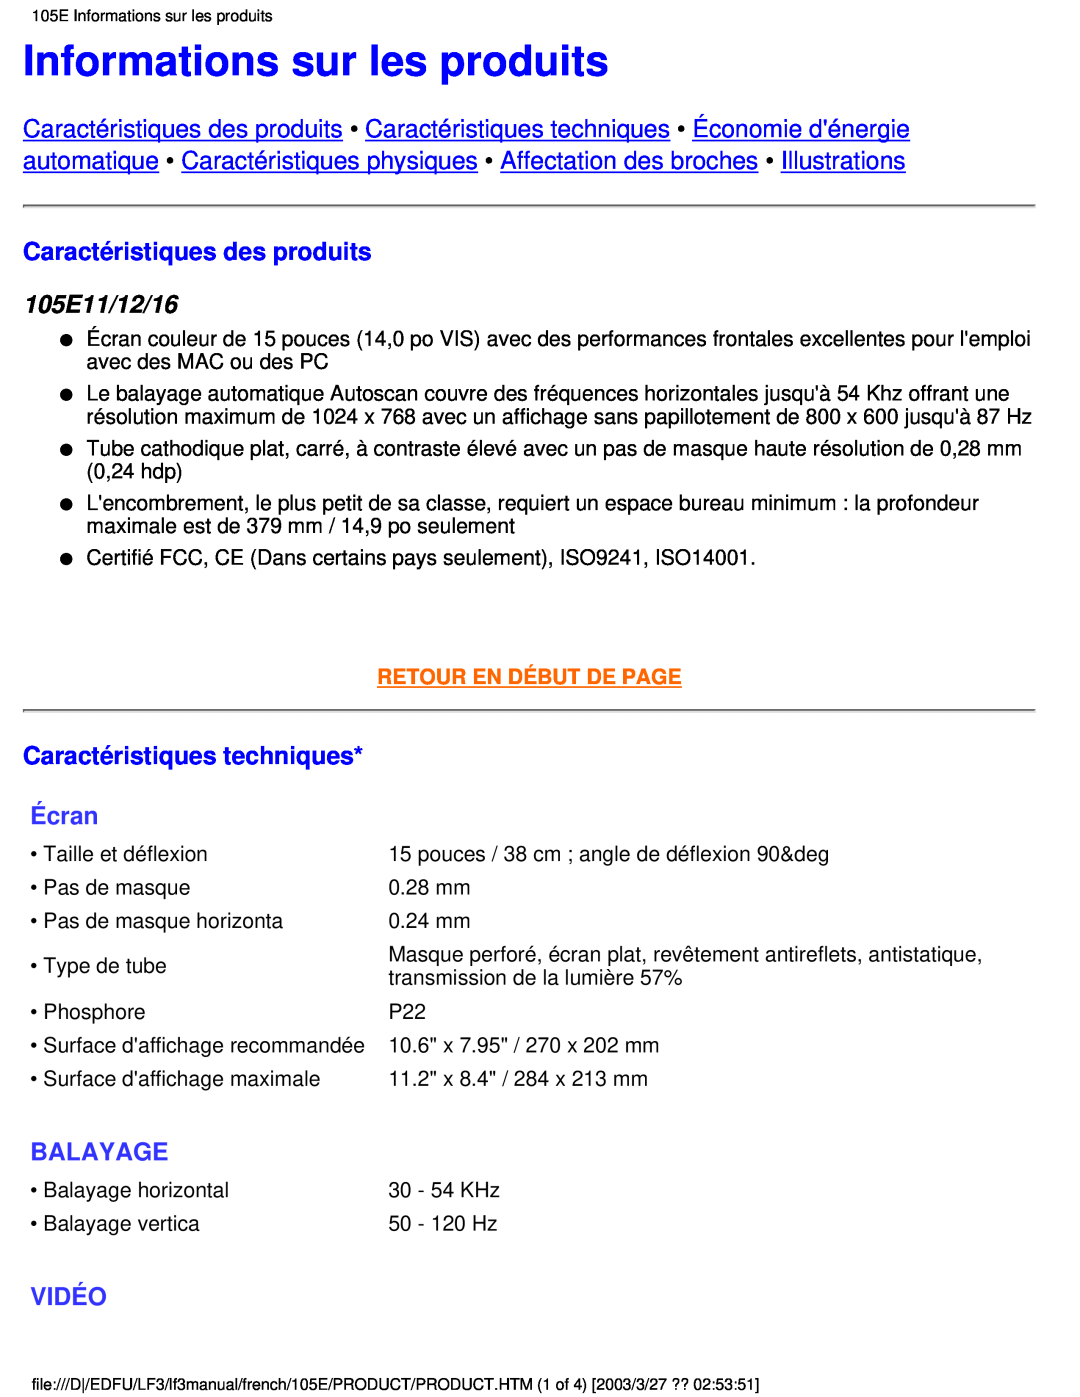 Philips Informations sur les produits, Caractéristiques des produits, 105E11/12/16, Caractéristiques techniques, Écran 